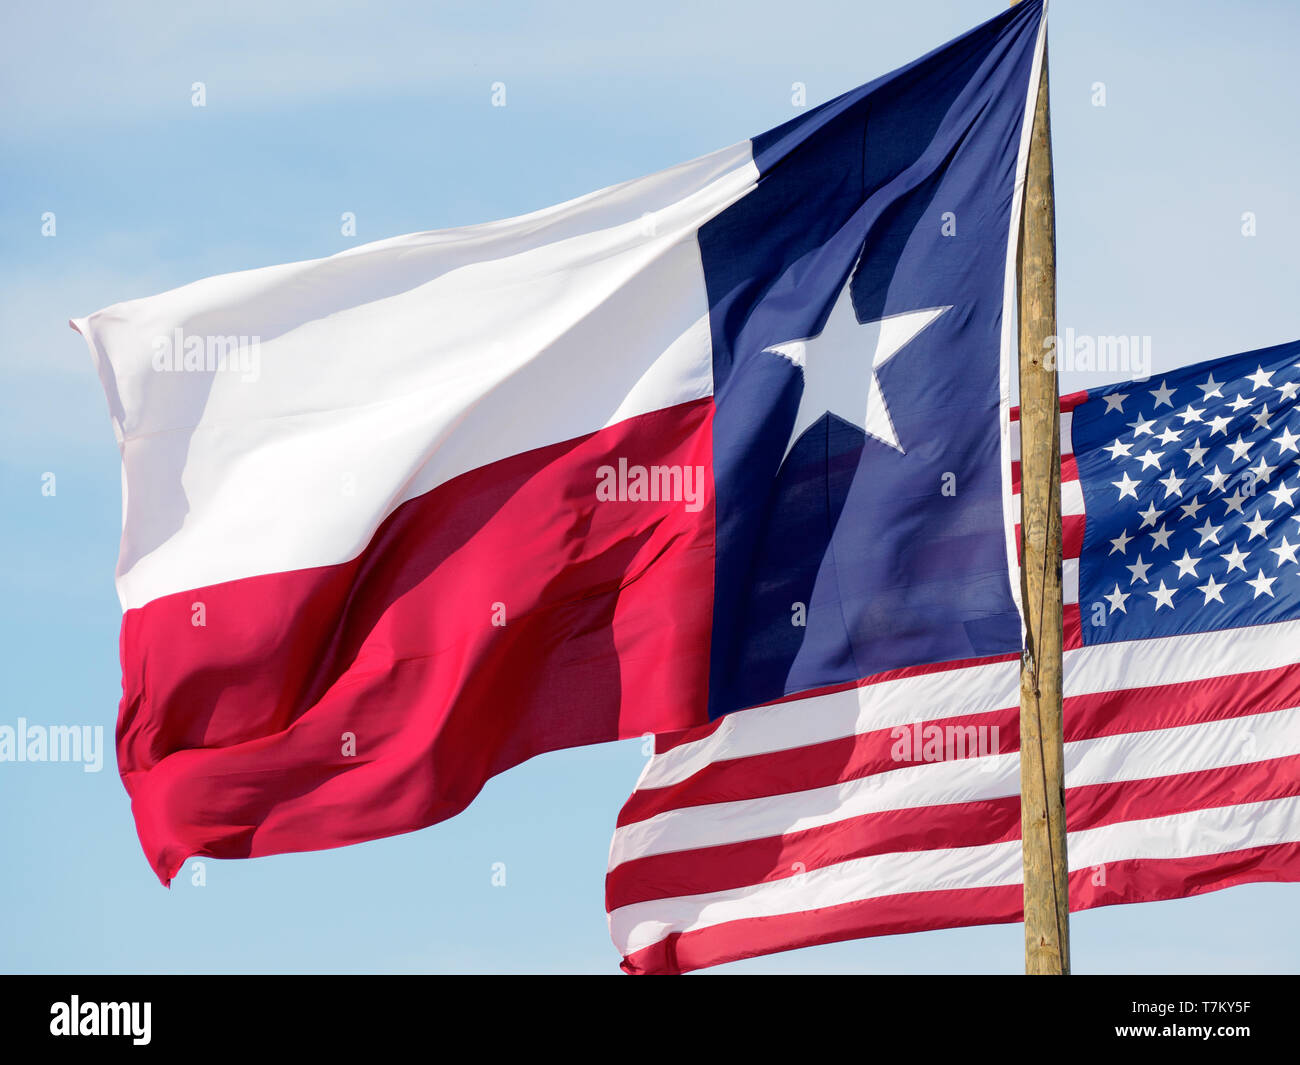 Das Texas State Flag Flag mit Vereinigten Staaten im Hintergrund fliegt Am2019 Texas Sandfest in Port Aransas, Texas USA. Stockfoto